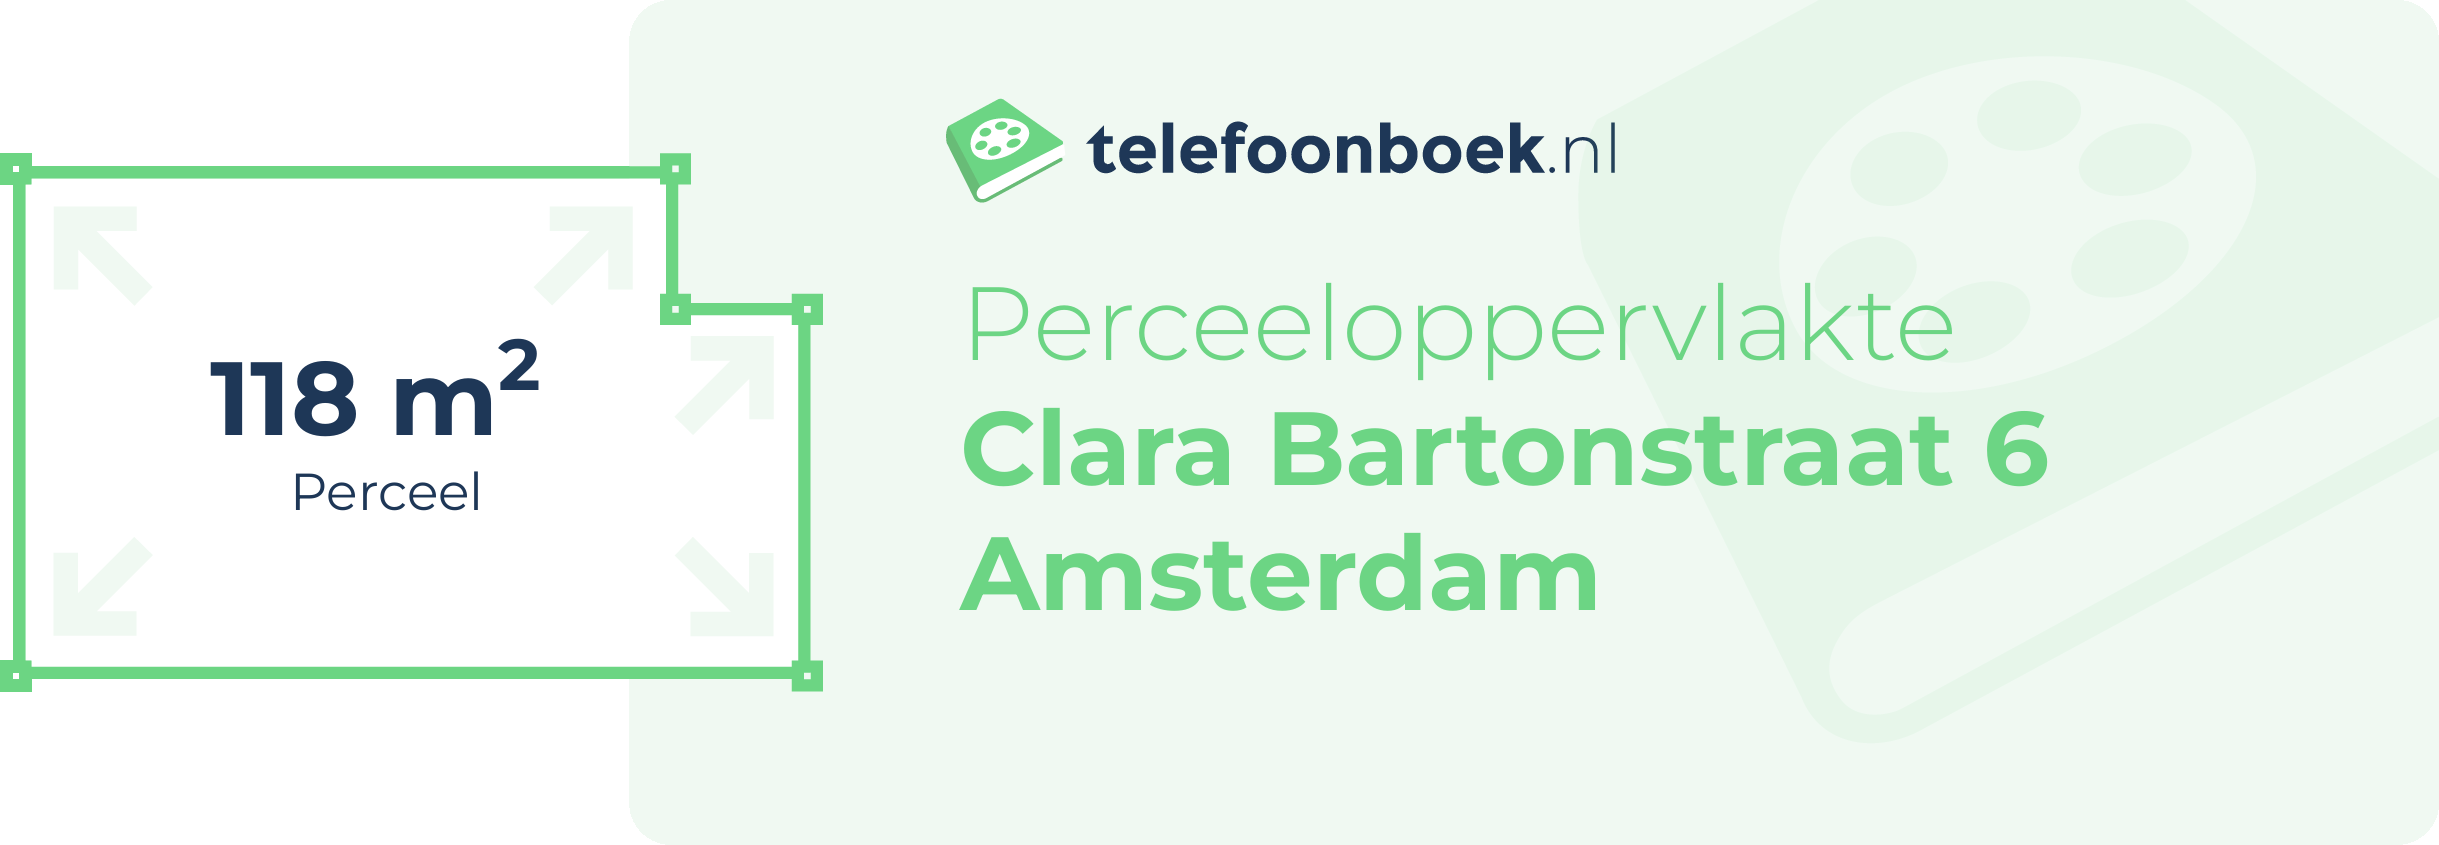 Perceeloppervlakte Clara Bartonstraat 6 Amsterdam